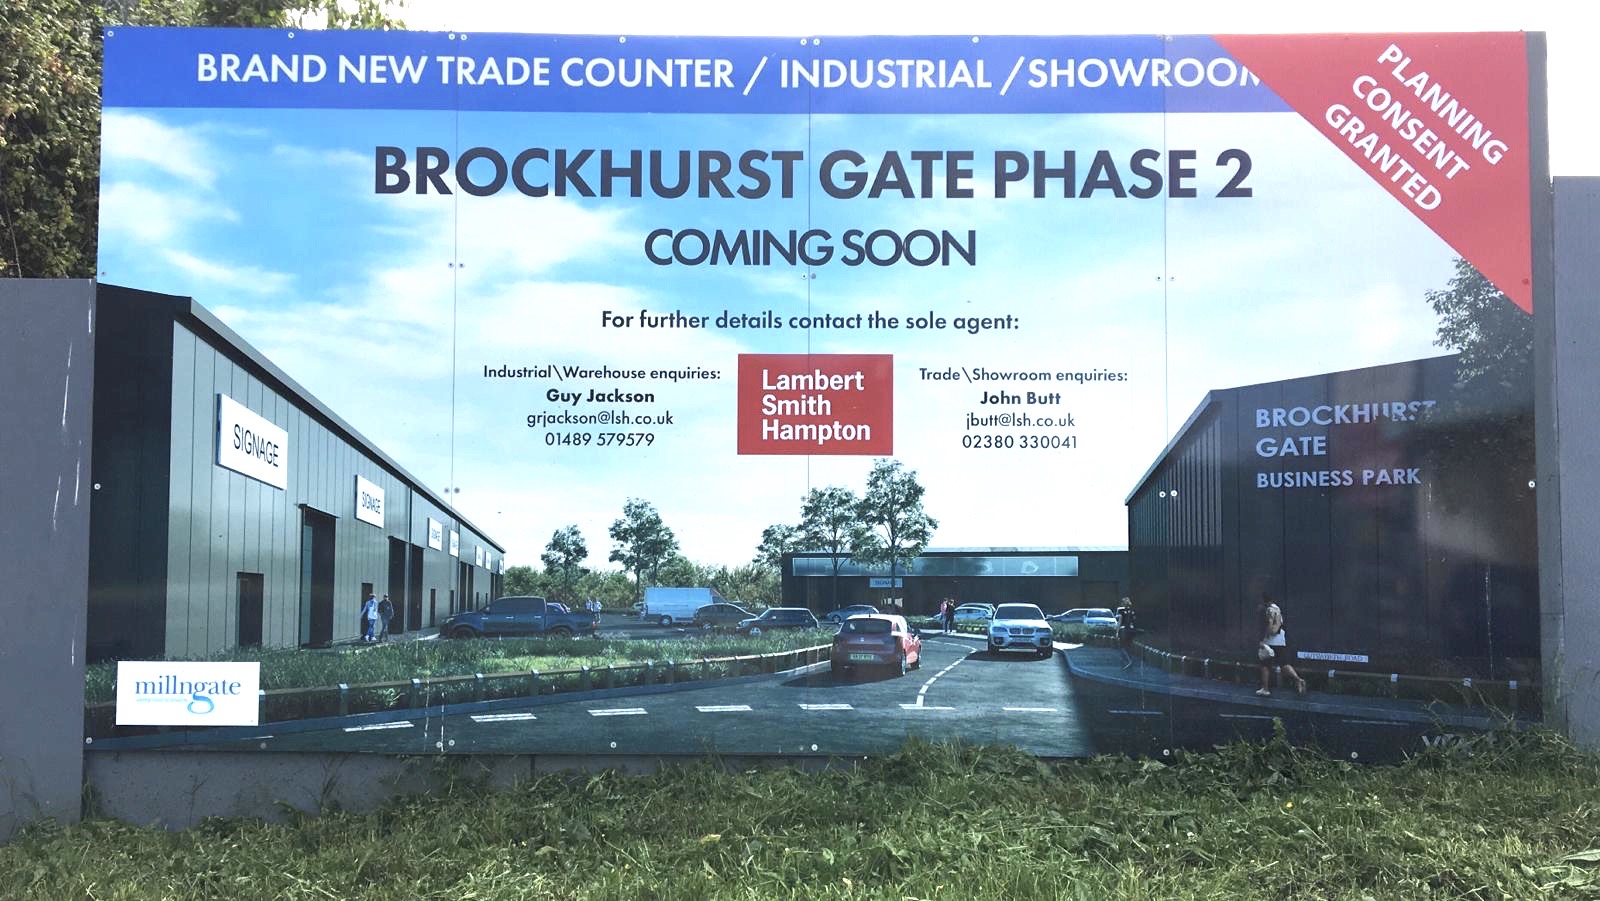 Phase 2 Brockhurst Gate announced